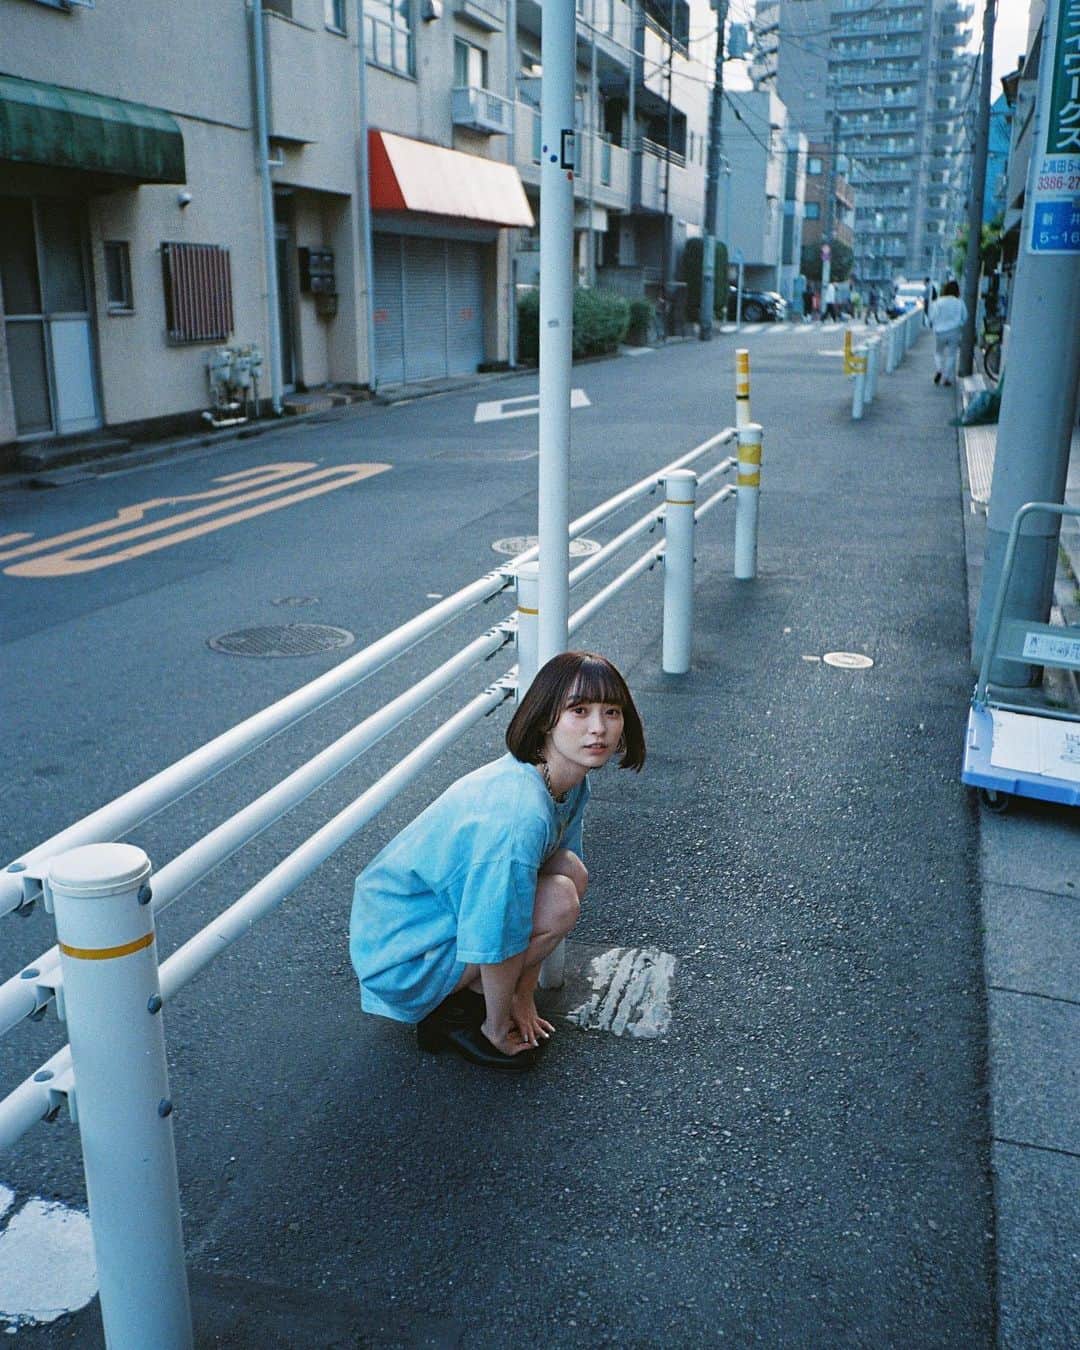 Yuma Takatsukiのインスタグラム：「. . . film . . . . . . あんまり行ったことない街で電車を降りて ふらふらと歩く撮影けっこう好き。 旅をしてる感覚に近い。 ⁡ 一駅ずつ降りて撮影する企画でも 始めてみようかな〜。 ⁡ それでは今日もお疲れさまでした！ . Tokyo／Japan . #ultramax400  #Kodak #kodakultramax400  #フィルムカメラで残す日常  . ―――――――――――――――――――――――――― 関西を中心にフリーランスで活動しています。 Web広告、個人撮影、家族撮影、PR撮影など、 5月以降の撮影依頼募集中です。 ⁡ ⁡Yuma Takatsukiオリジナルプリセットも販売中です。 ⁡プロフィールのポートフォリオサイトからご覧下さい。  またフォトサークルITTOKOという活動をしています。 ⁡ハイライトに色んなイベントをまとめています。 ――――――――――――――――――――――――――」